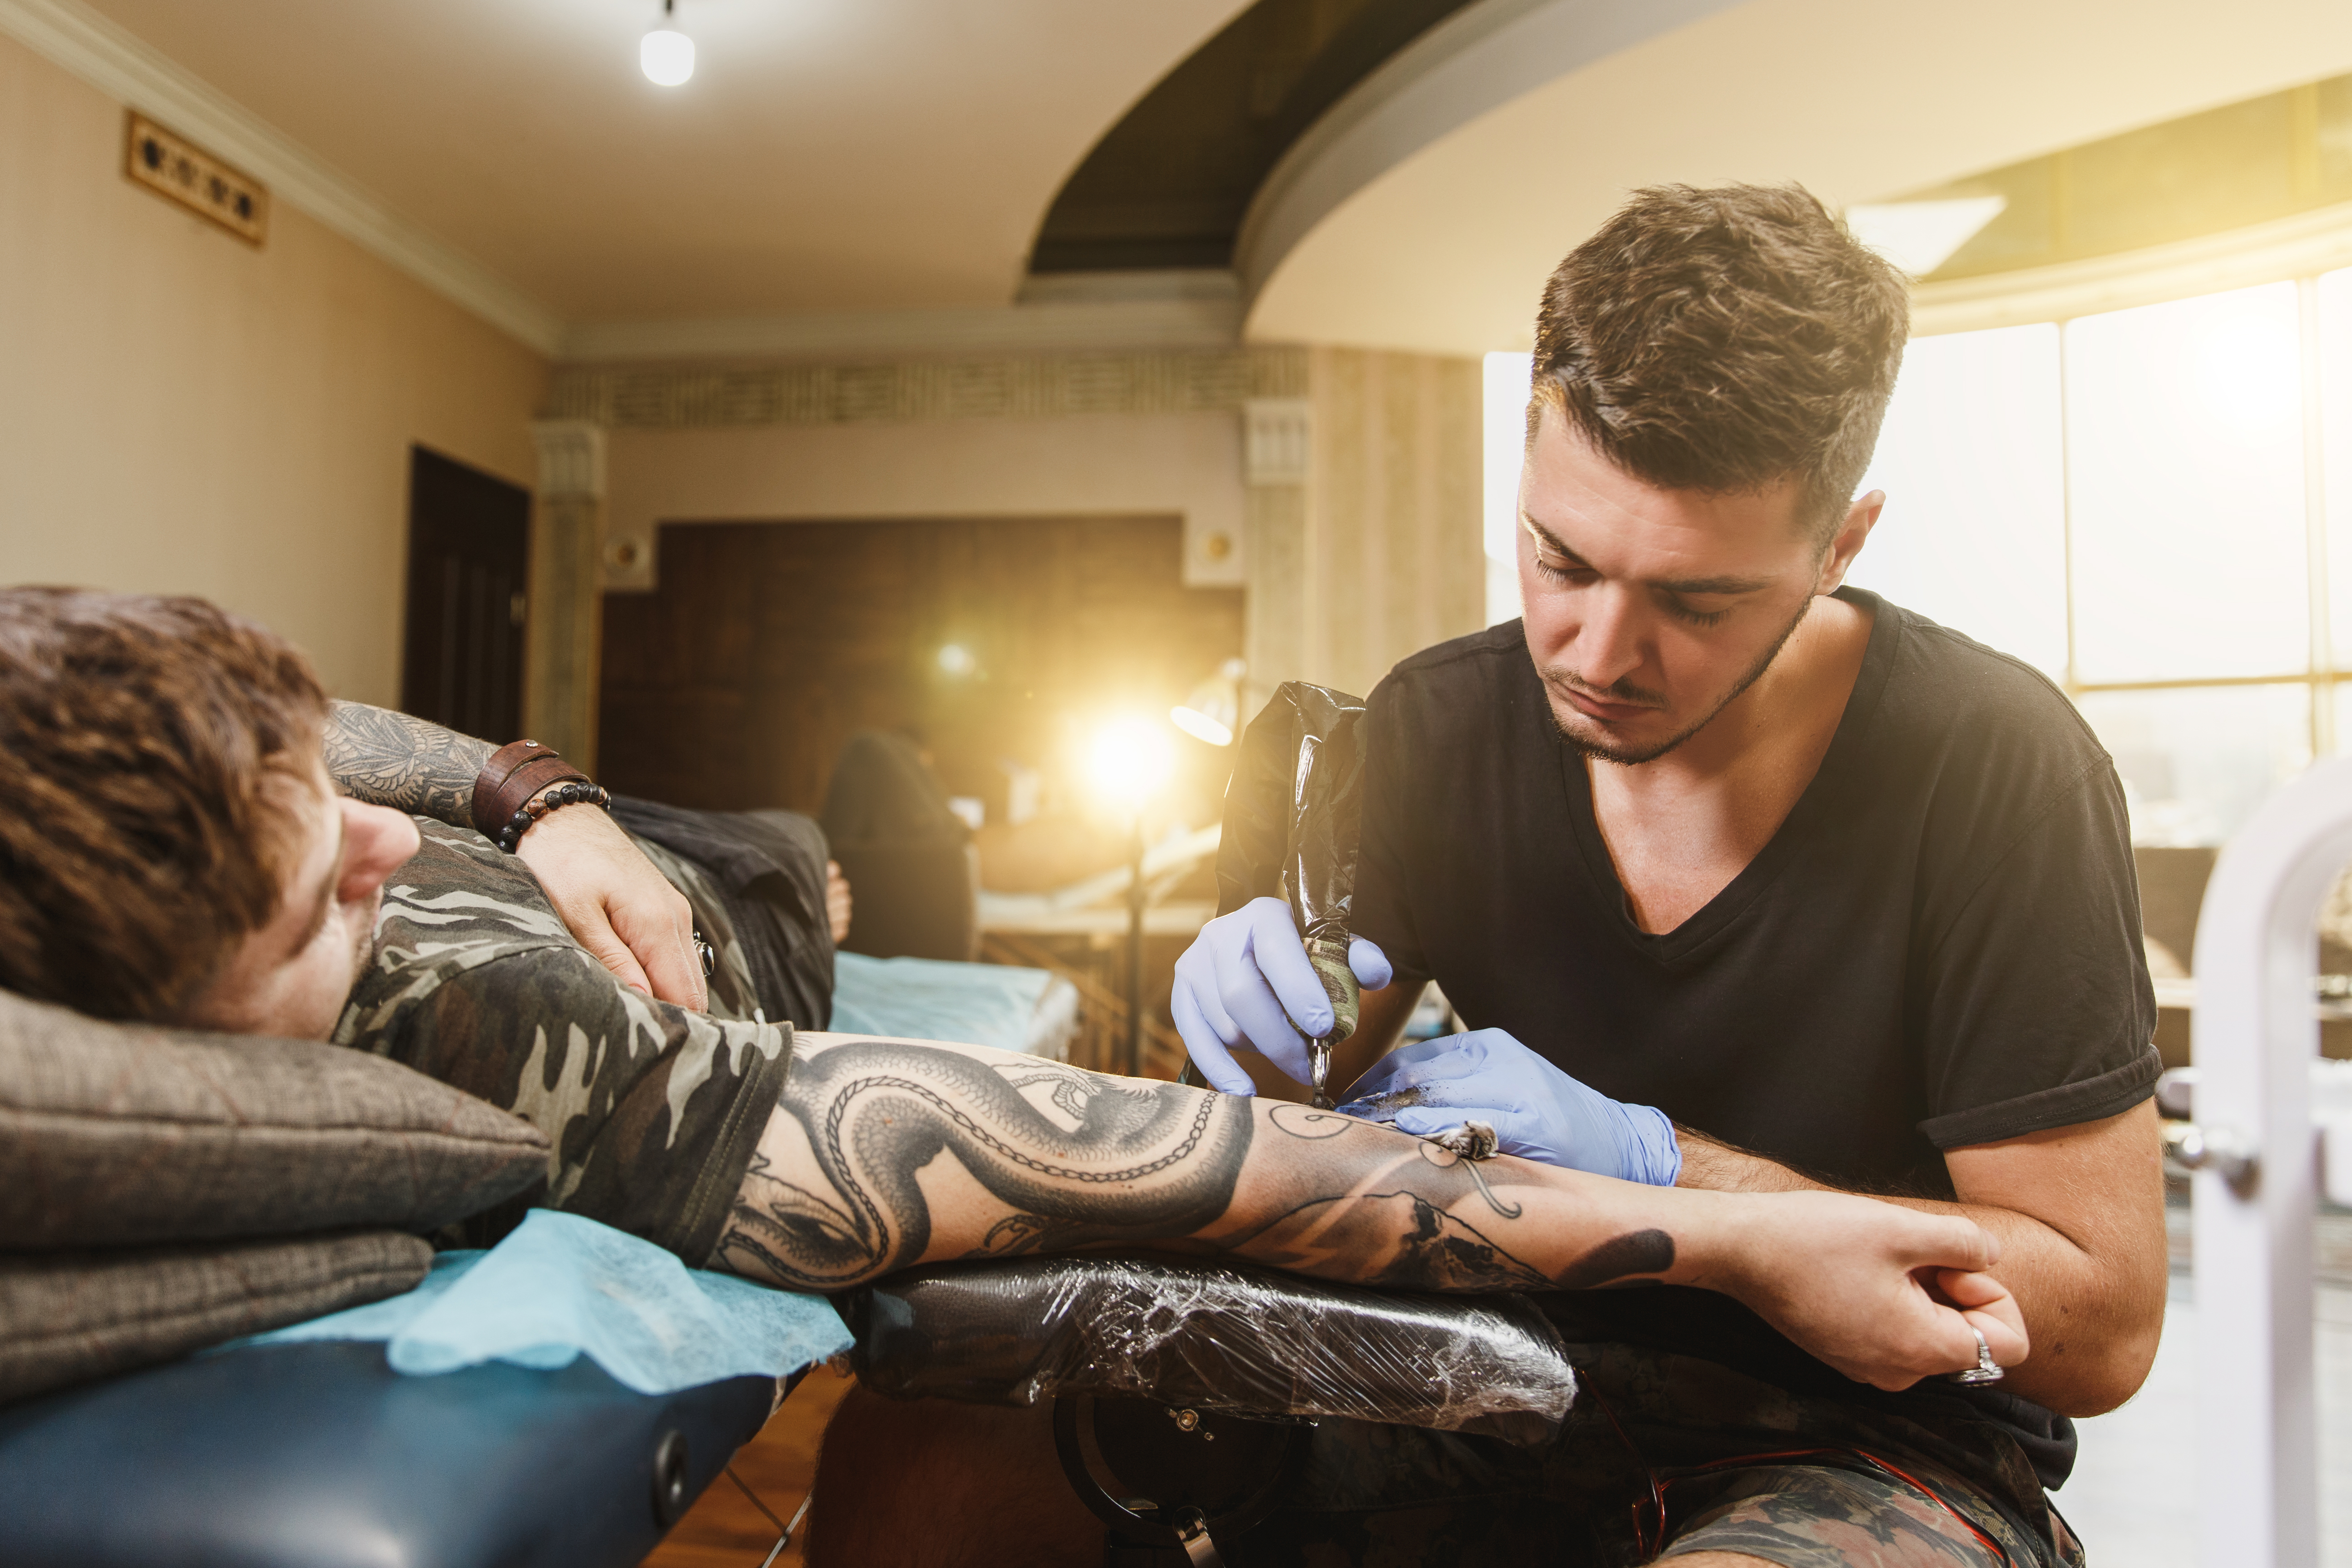 <p>Abilitazione igienico sanitaria per svolgere l’attività di tatuaggio Piercing Trucco semipermanente – durata 90 ore<br />
Dgr n.355 del 24 marzo 2016 Regione Veneto</p>
